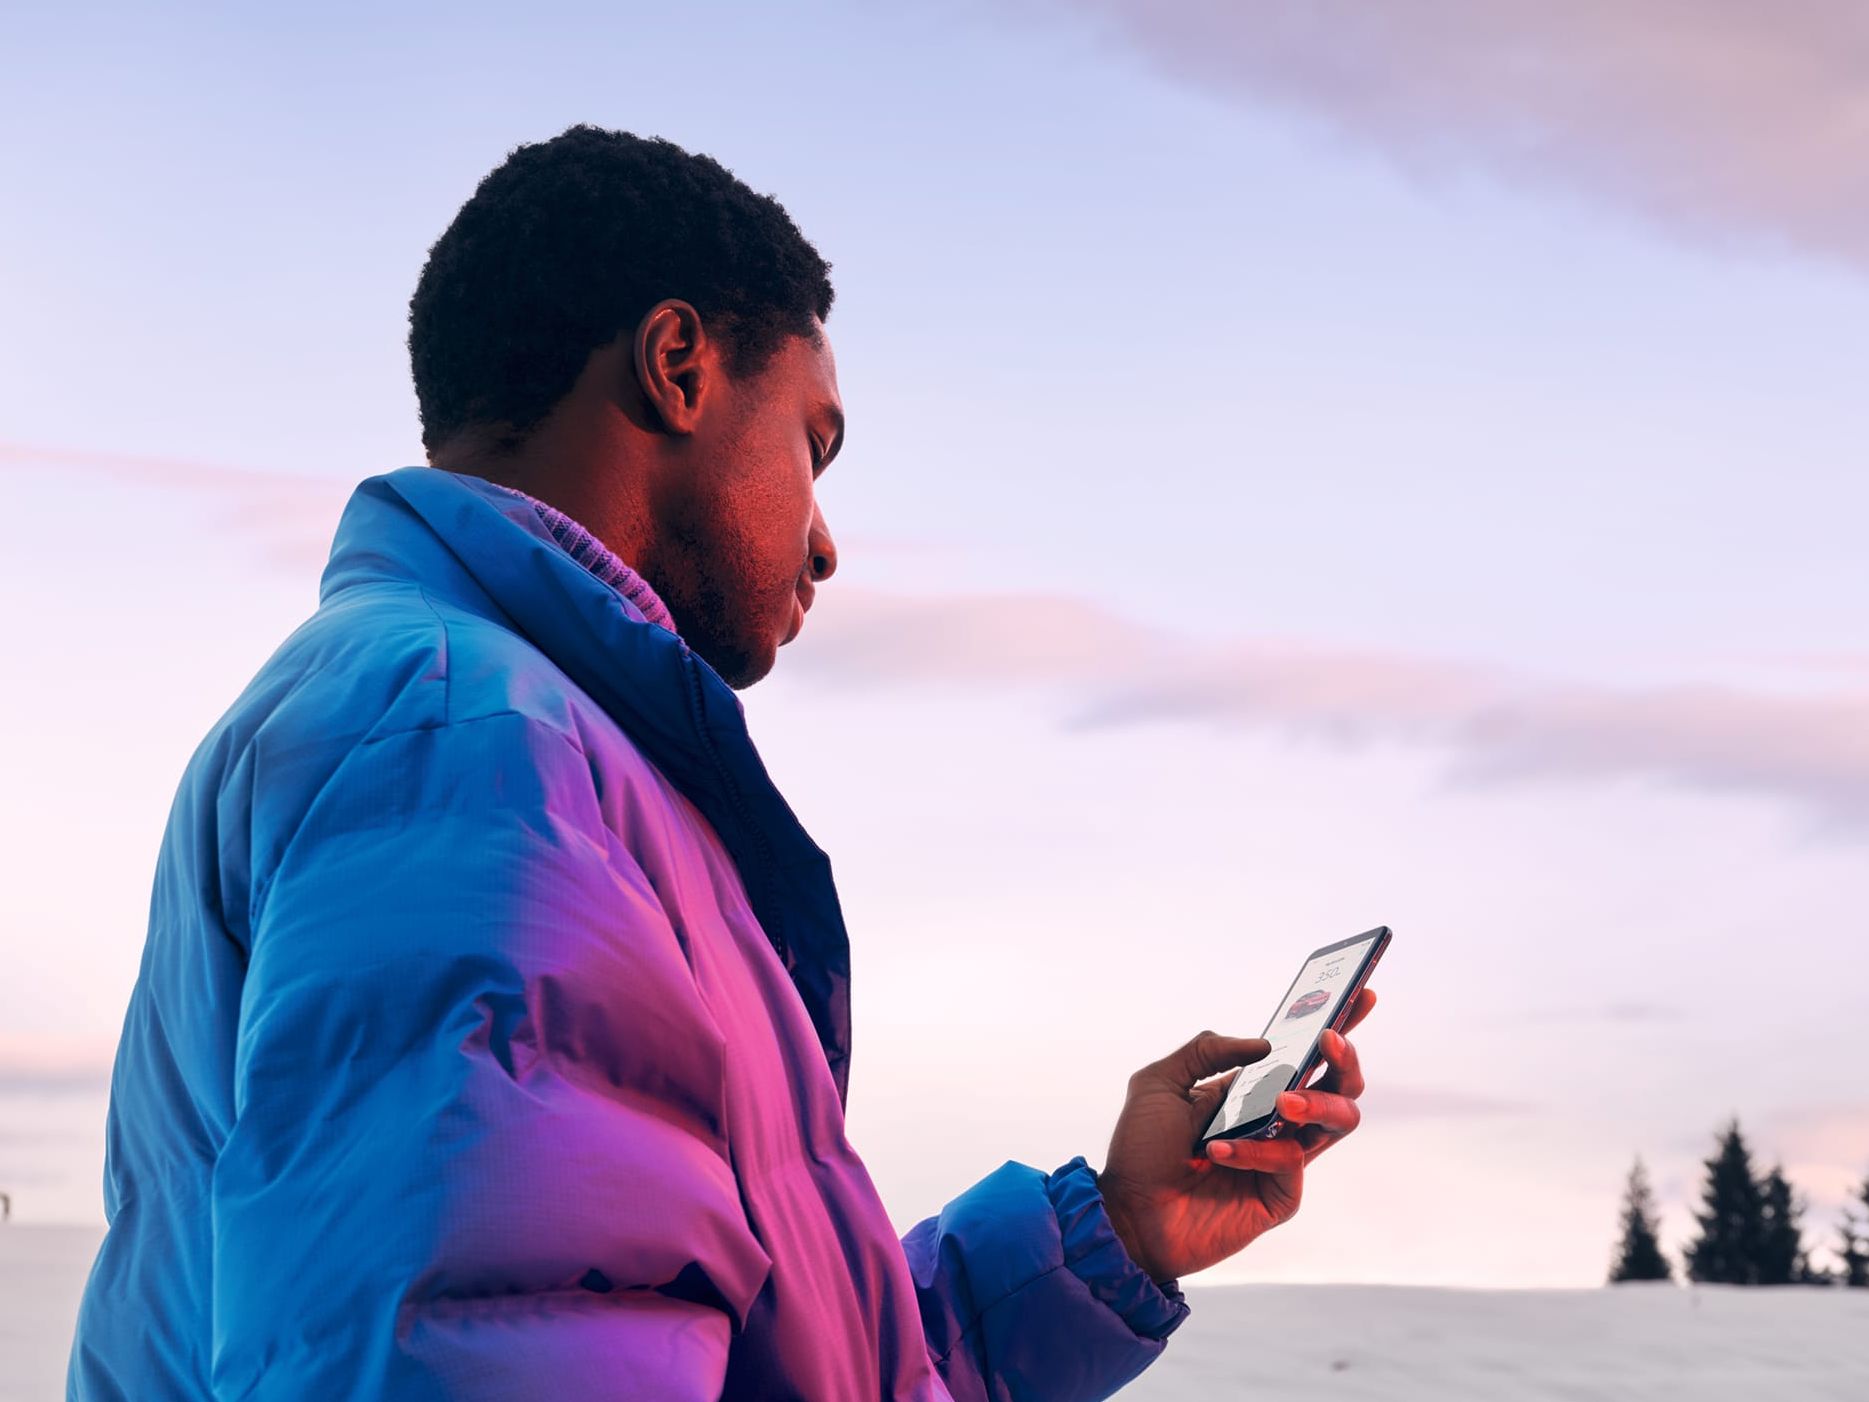 Ein Mann in Winterjacke steht in verschneiter Landschaft und schaut auf sein Smartphone.